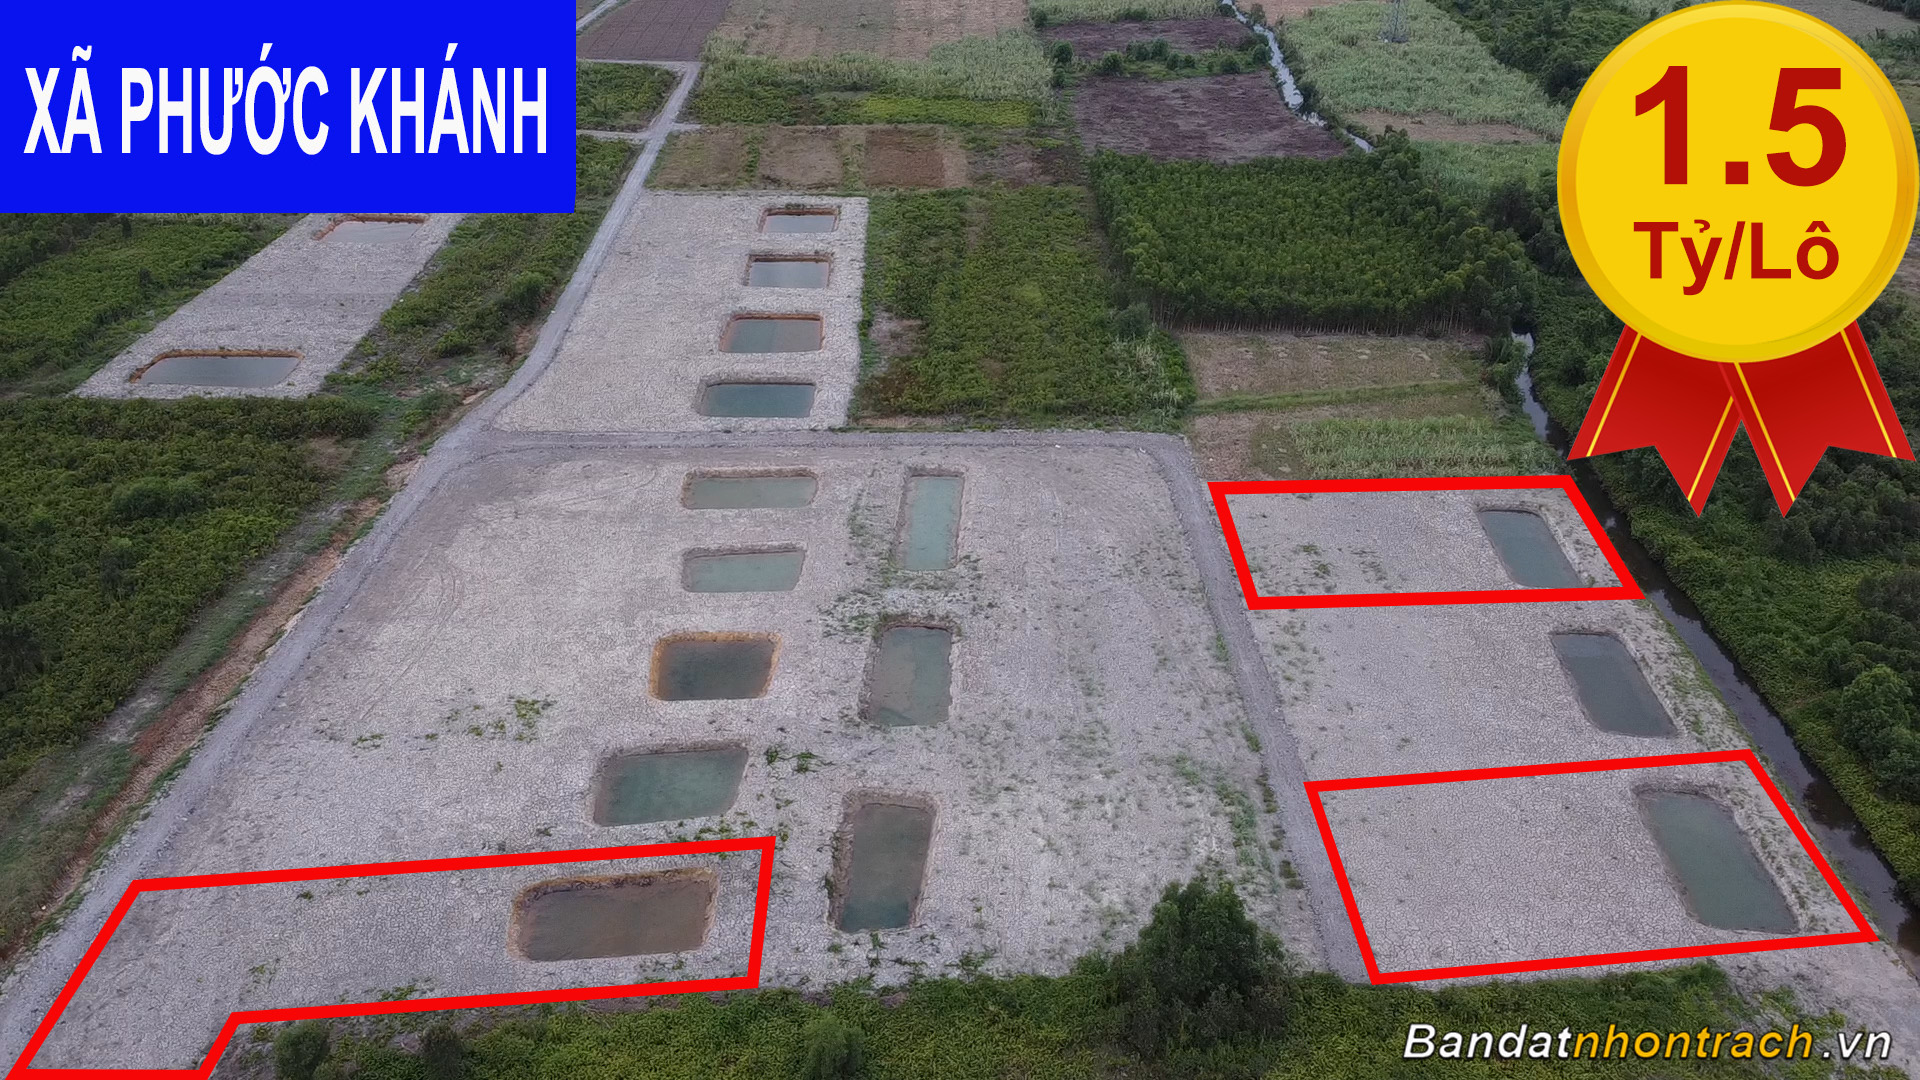 Bán đất Nhơn Trạch còn 1 lô đất vườn xã Phước Khánh đường ô tô giá cực rẻ chỉ 1.3tr/m2